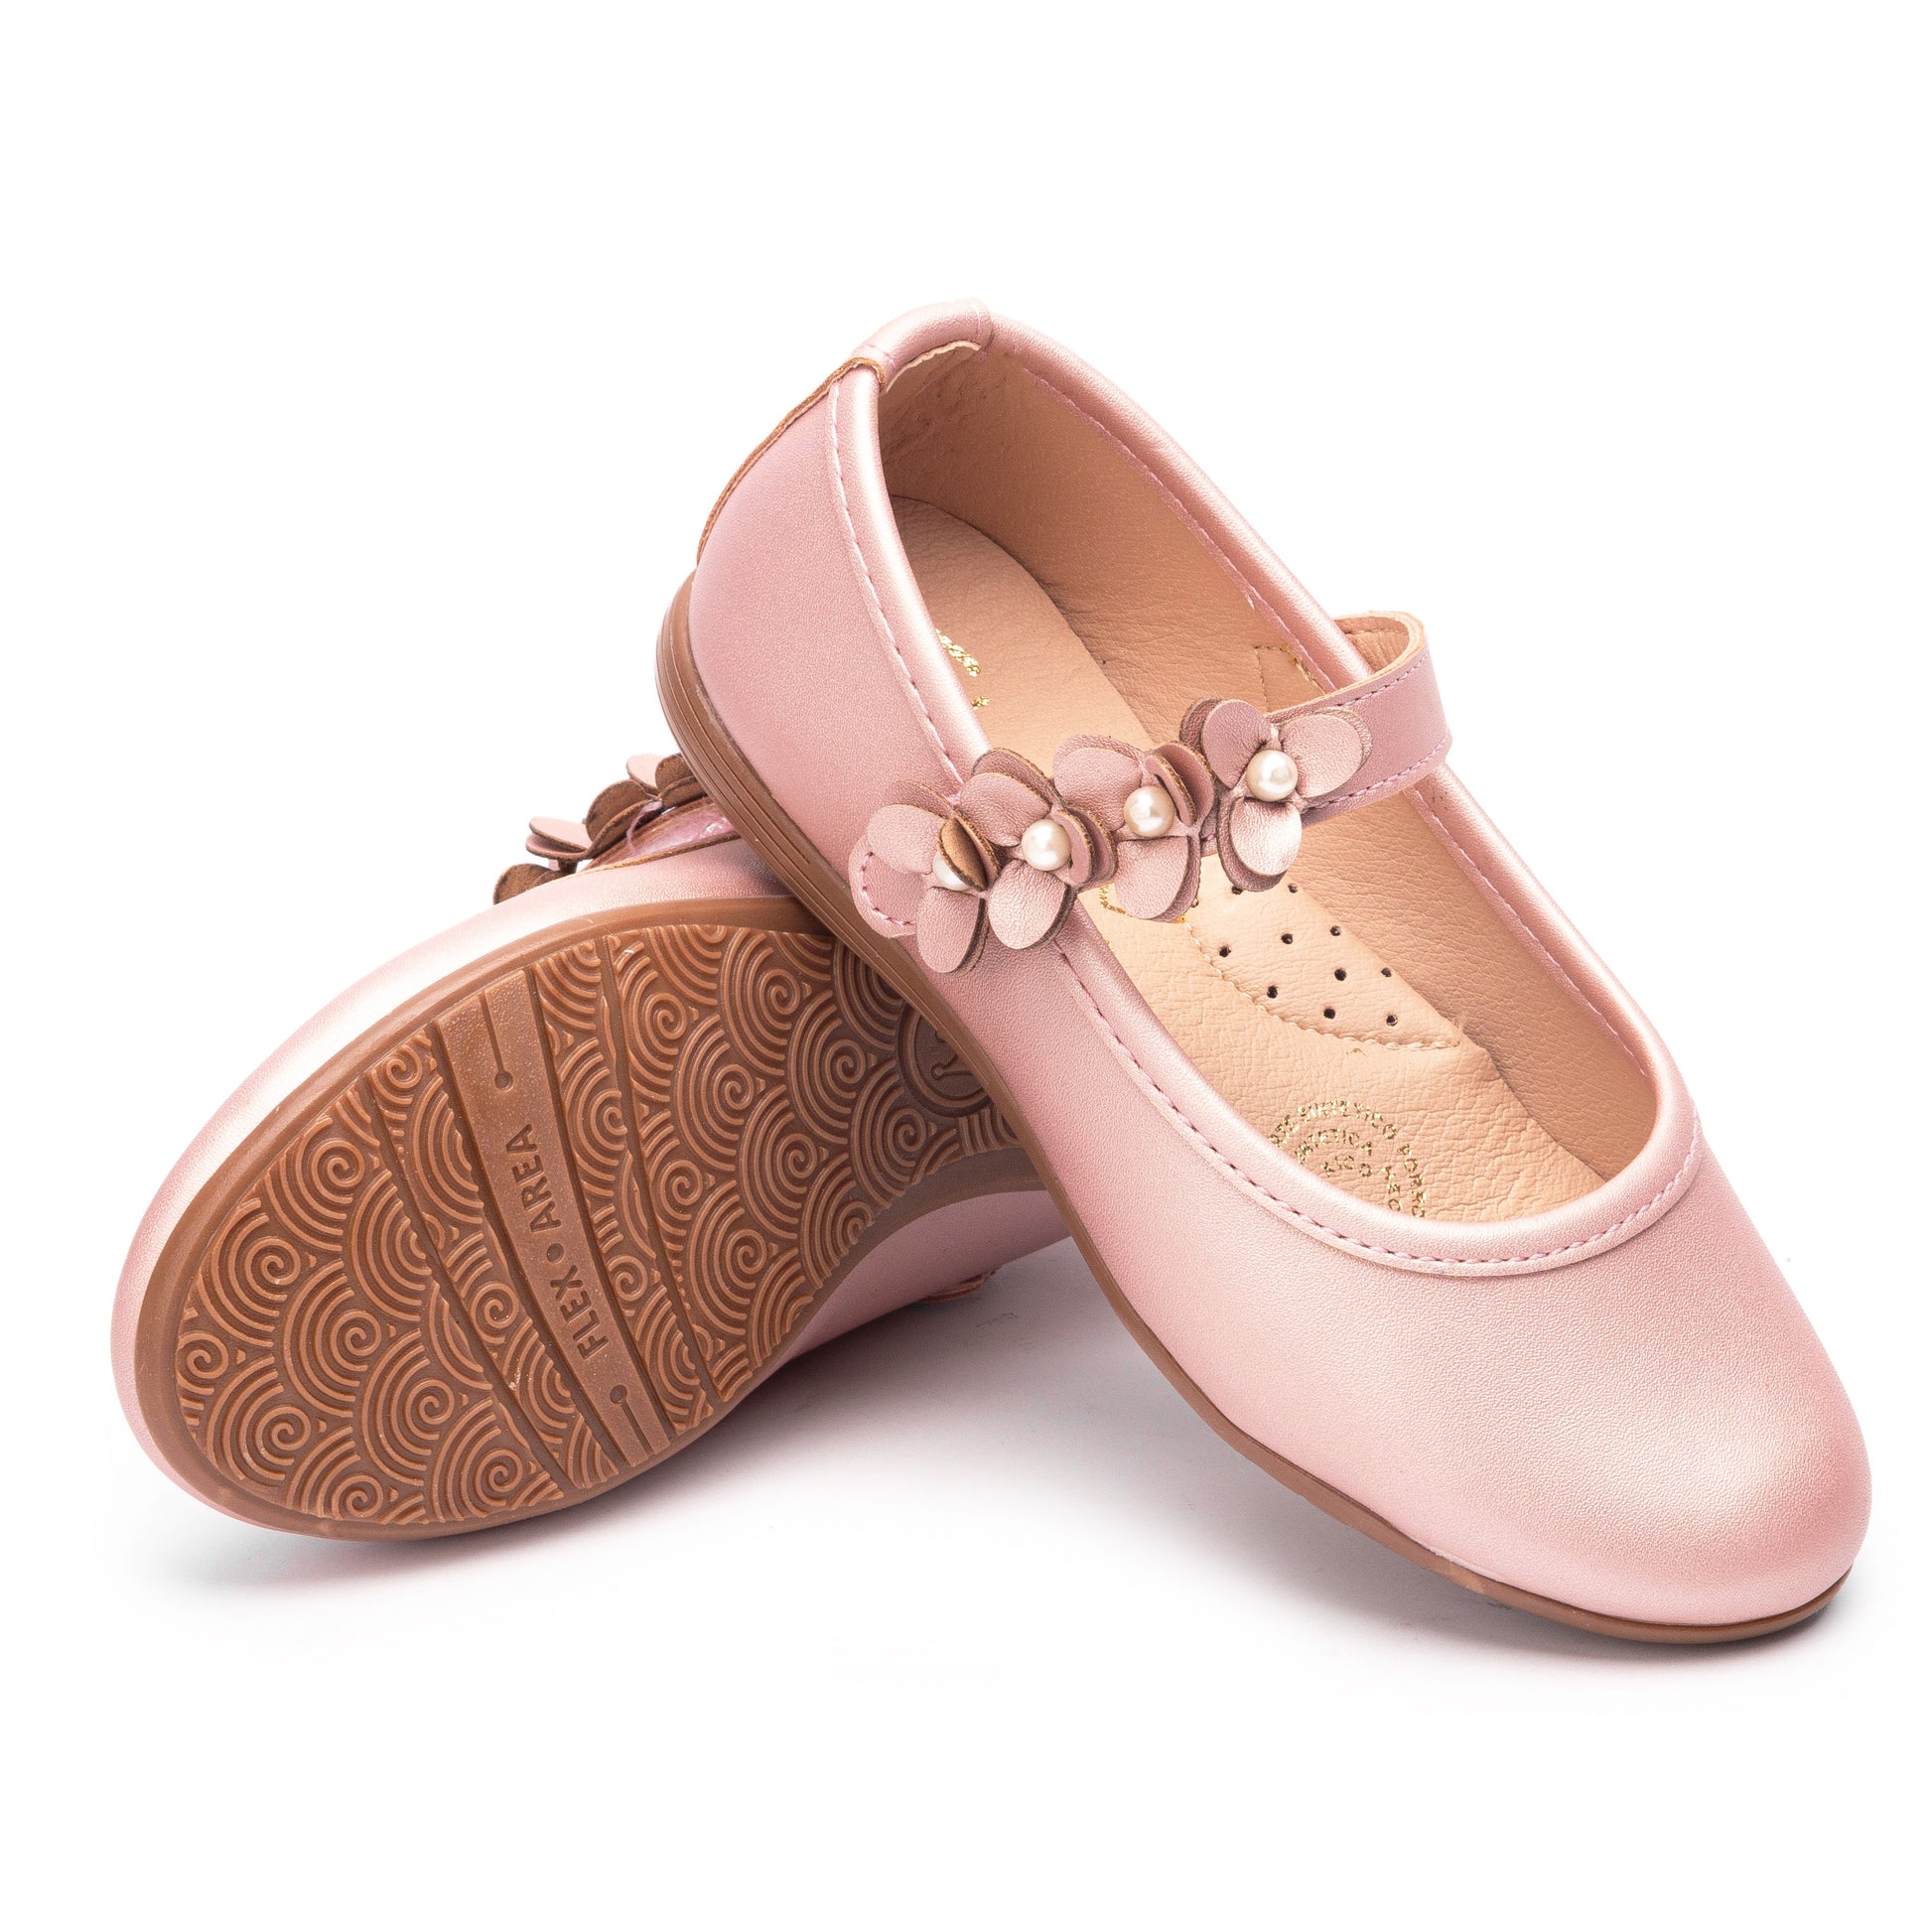 Zapato tipo Balerina color Champagne y Nacar para niña Jakuna 23894